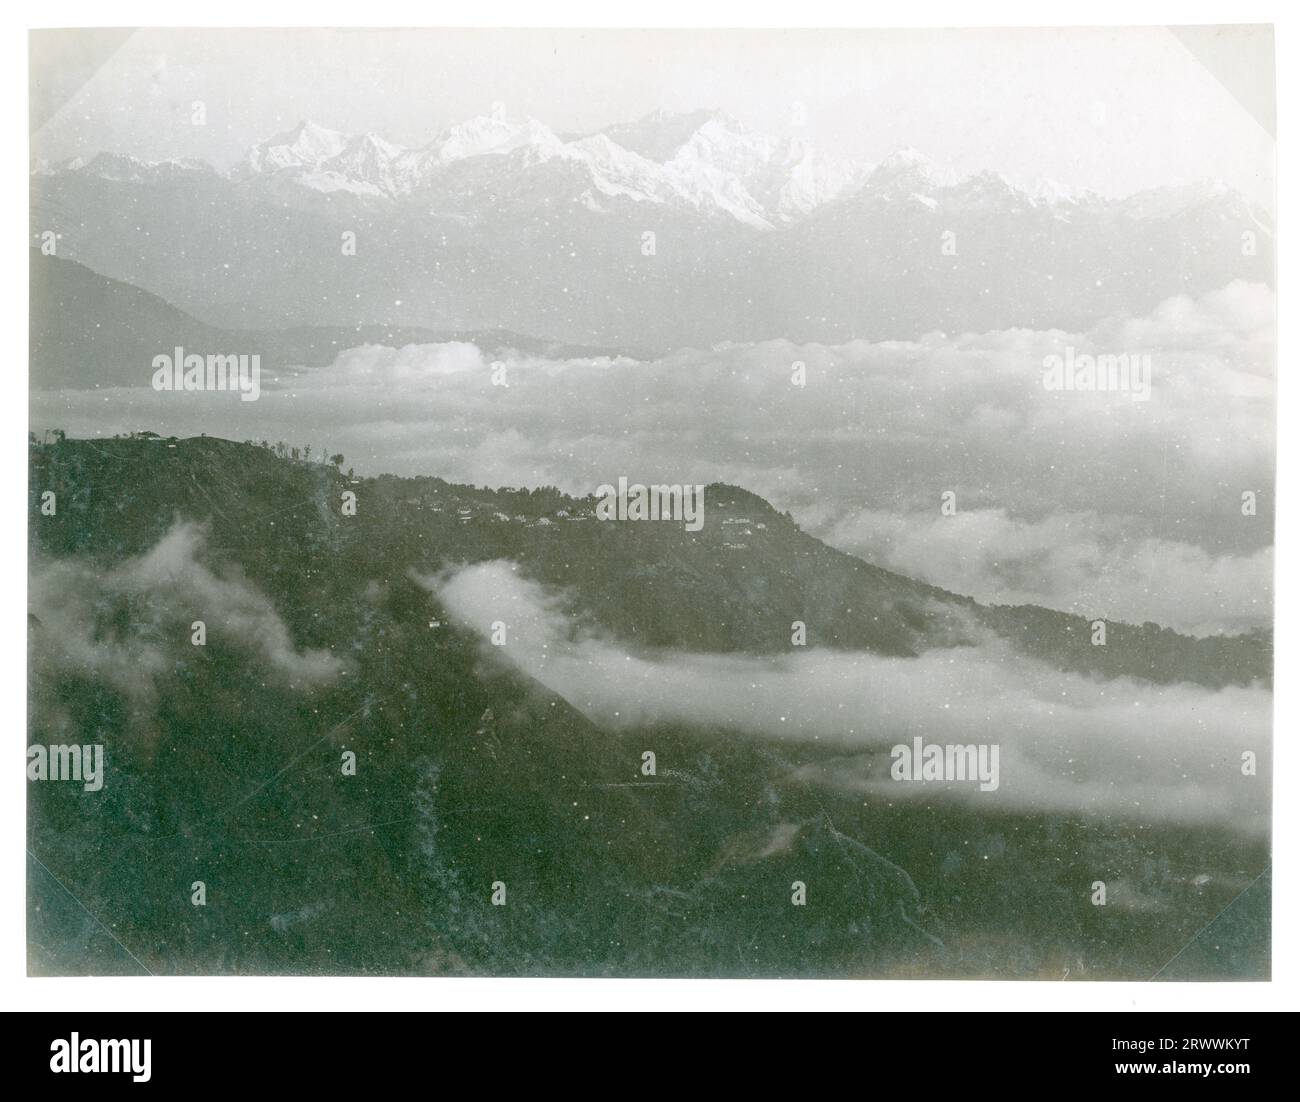 Berglandschaft mit verschneiten Gipfeln des Kangchenjunga in der Ferne. Wolken umgeben den Fuß des Berges. Die Bildunterschrift lautet: Kinchinjunga, Darjeeling im Vordergrund, vom Berg Senchal. Wolken steigen aus dem Tal auf. Stockfoto